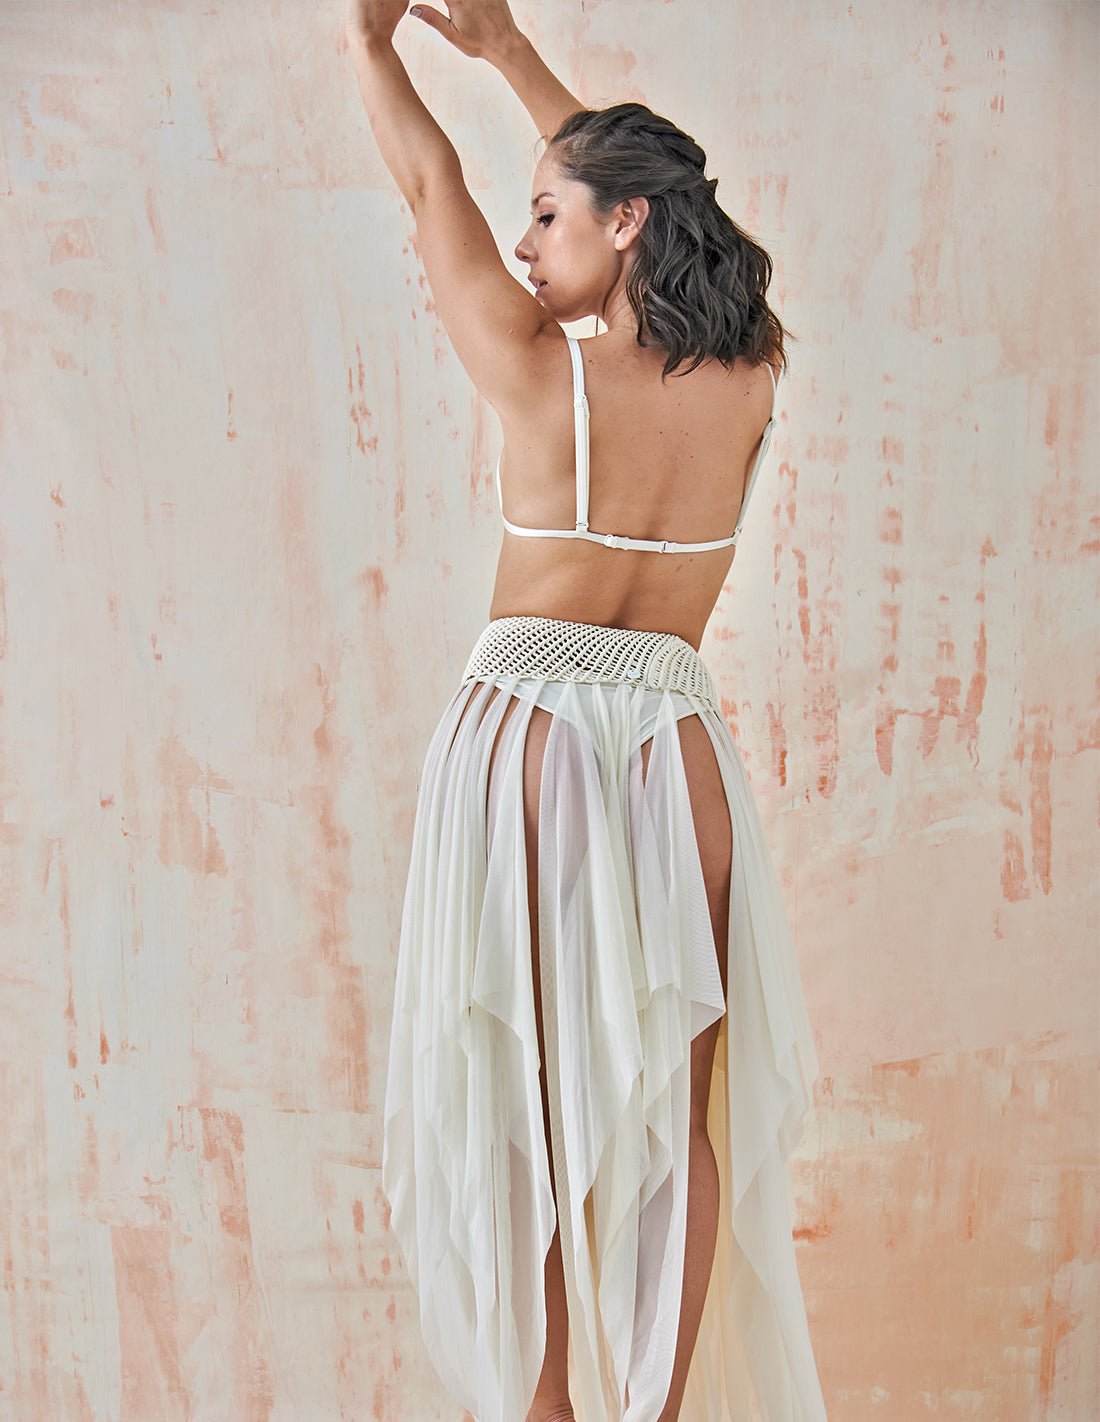 Remnant Long Skirt Ivory - Skirt - Entreaguas Wearable Art